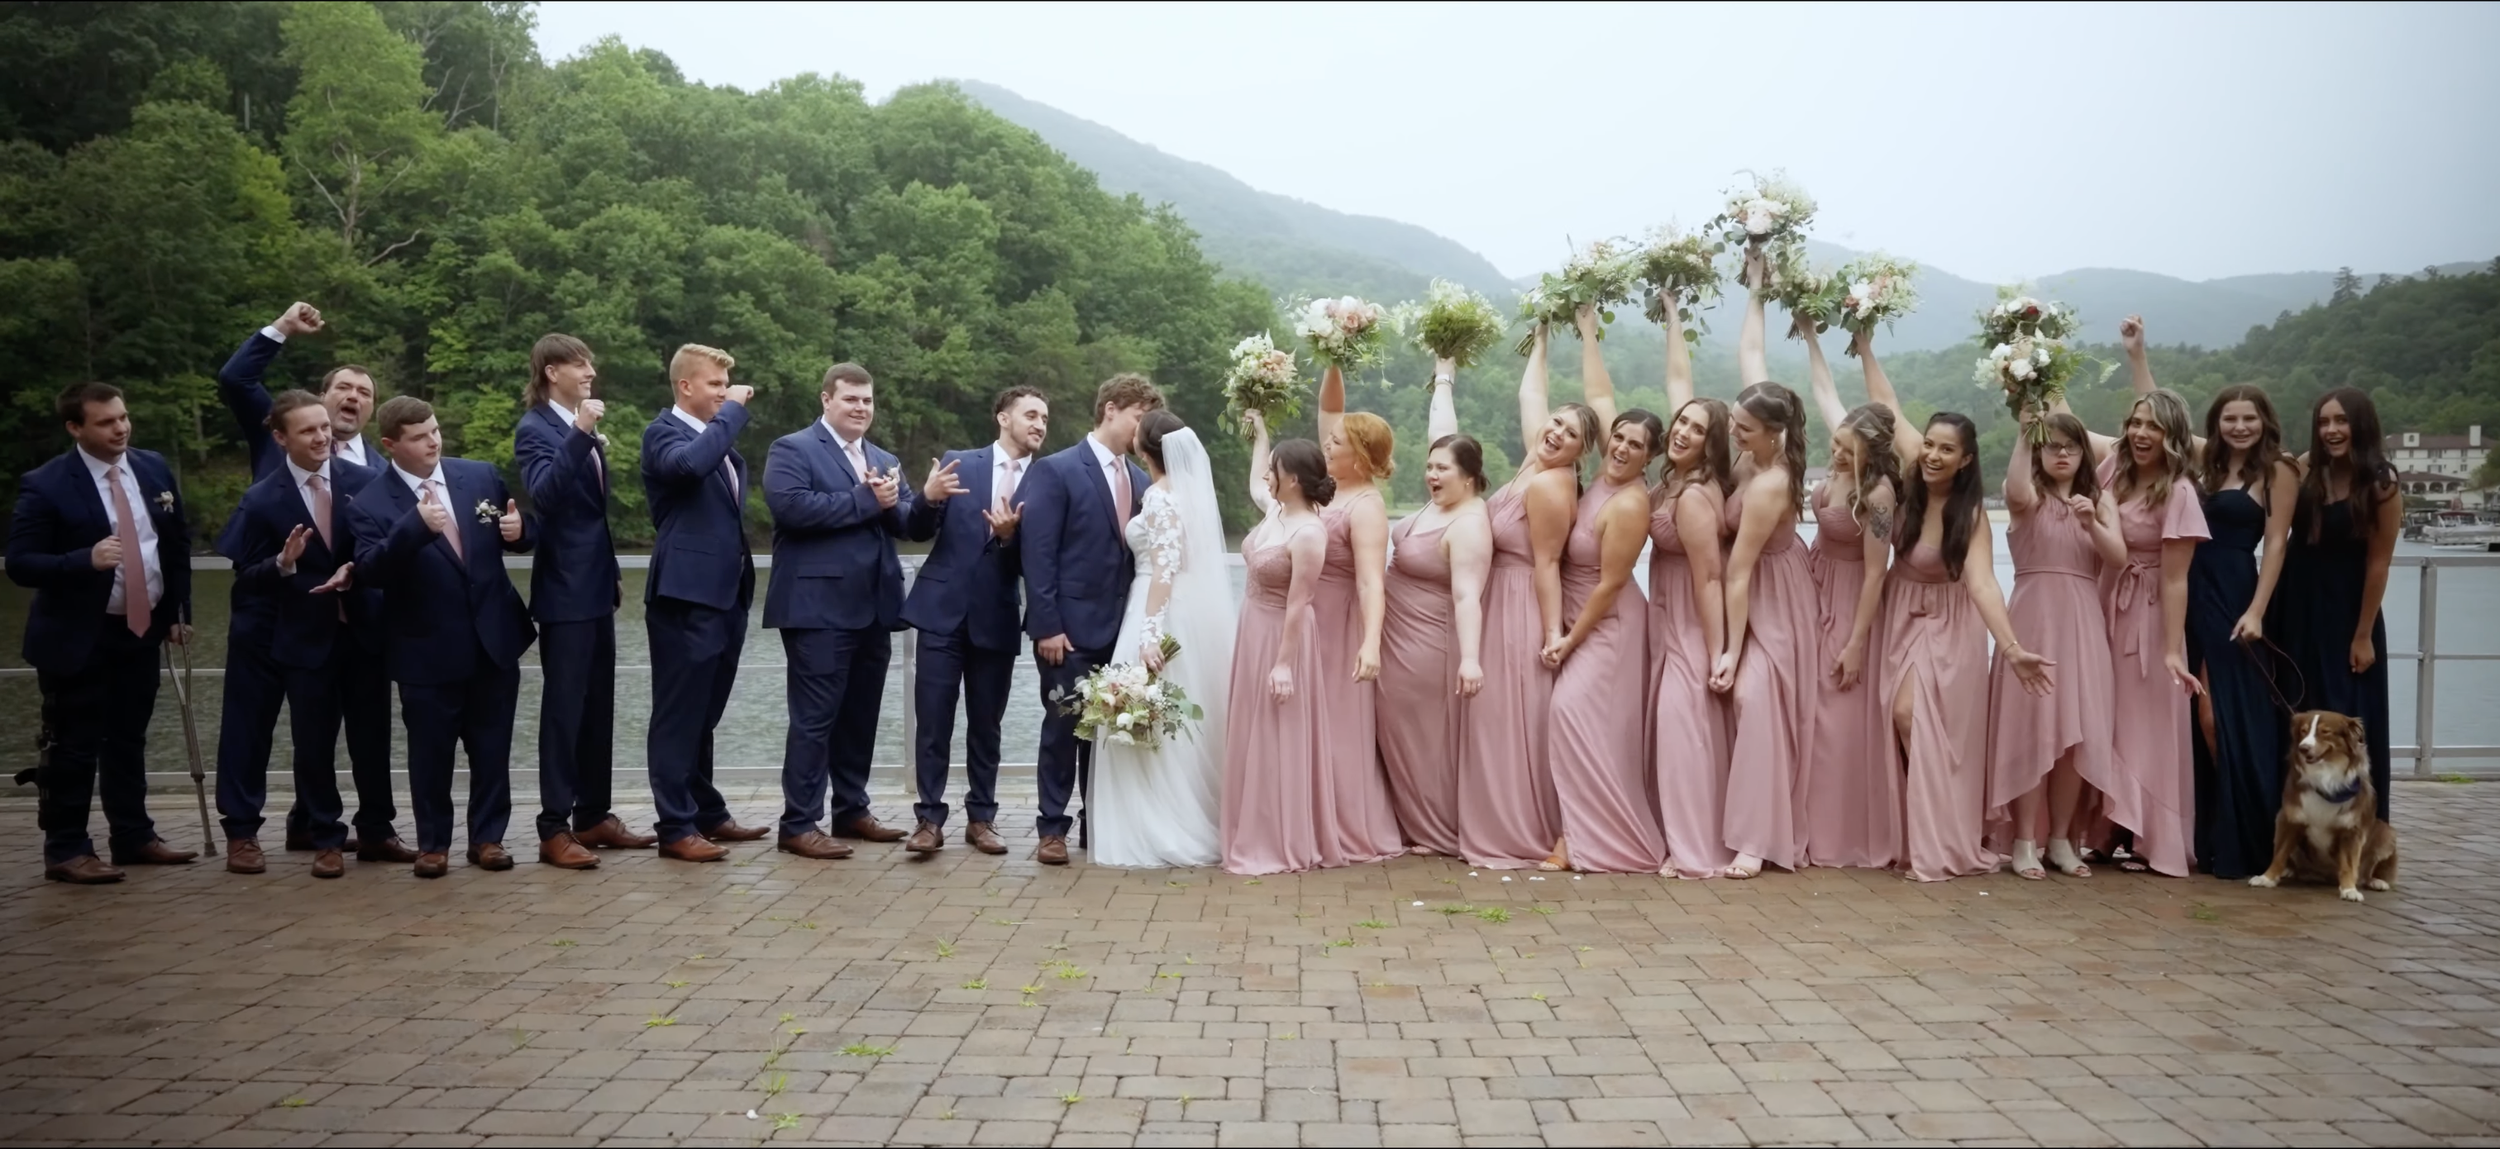 lake-lure-wedding-wynn-media1.png